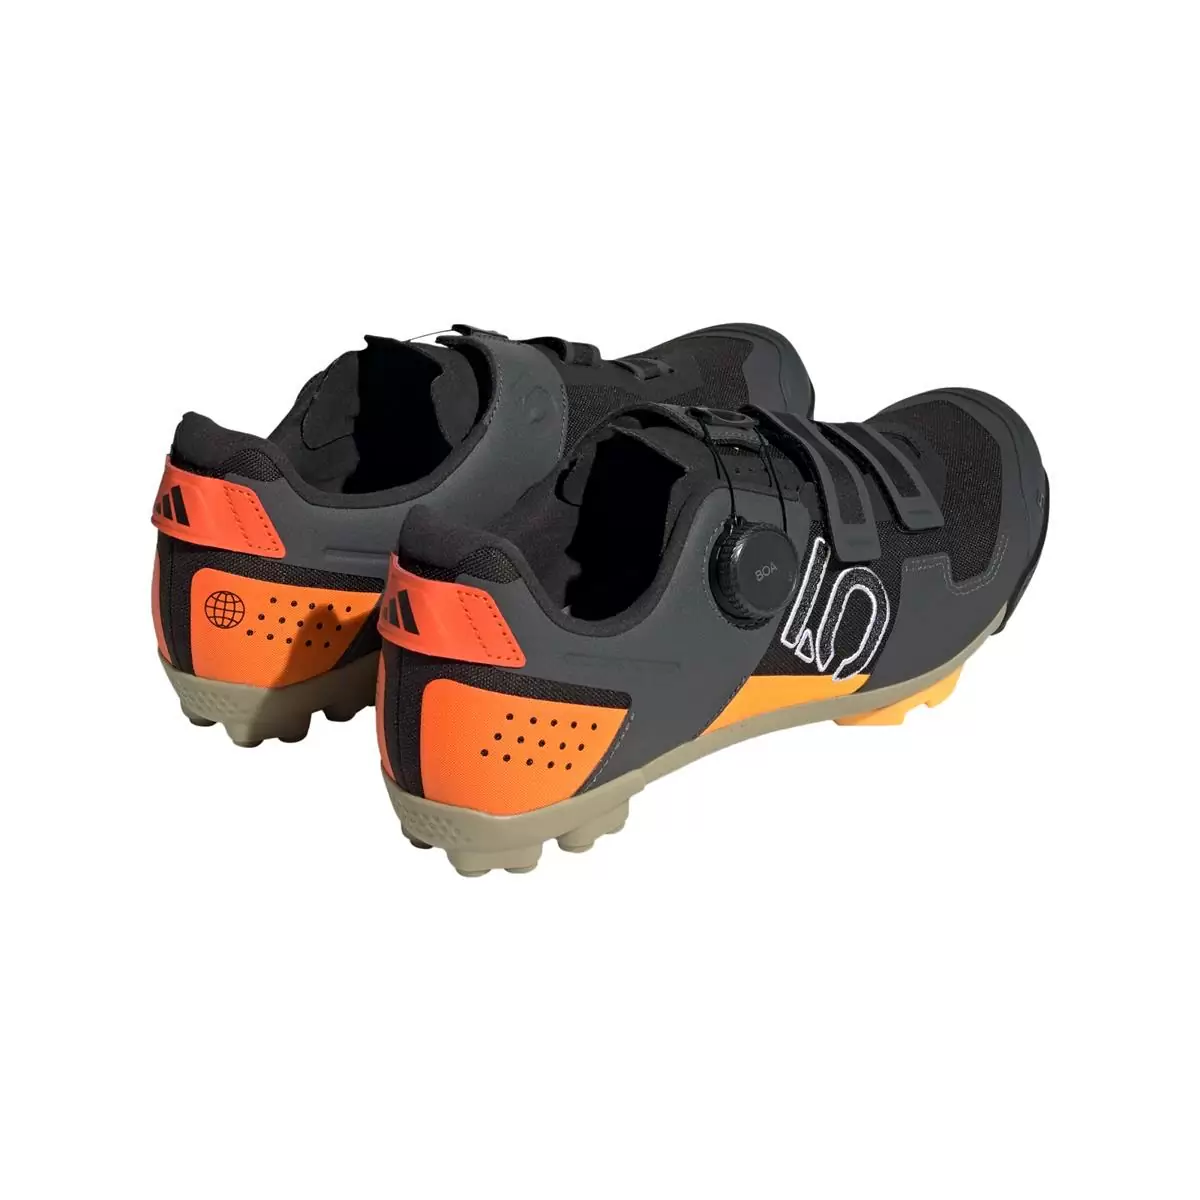 Clip 5.10 Kestrel Boa MTB Shoes Black/Orange Size 42.5 #4